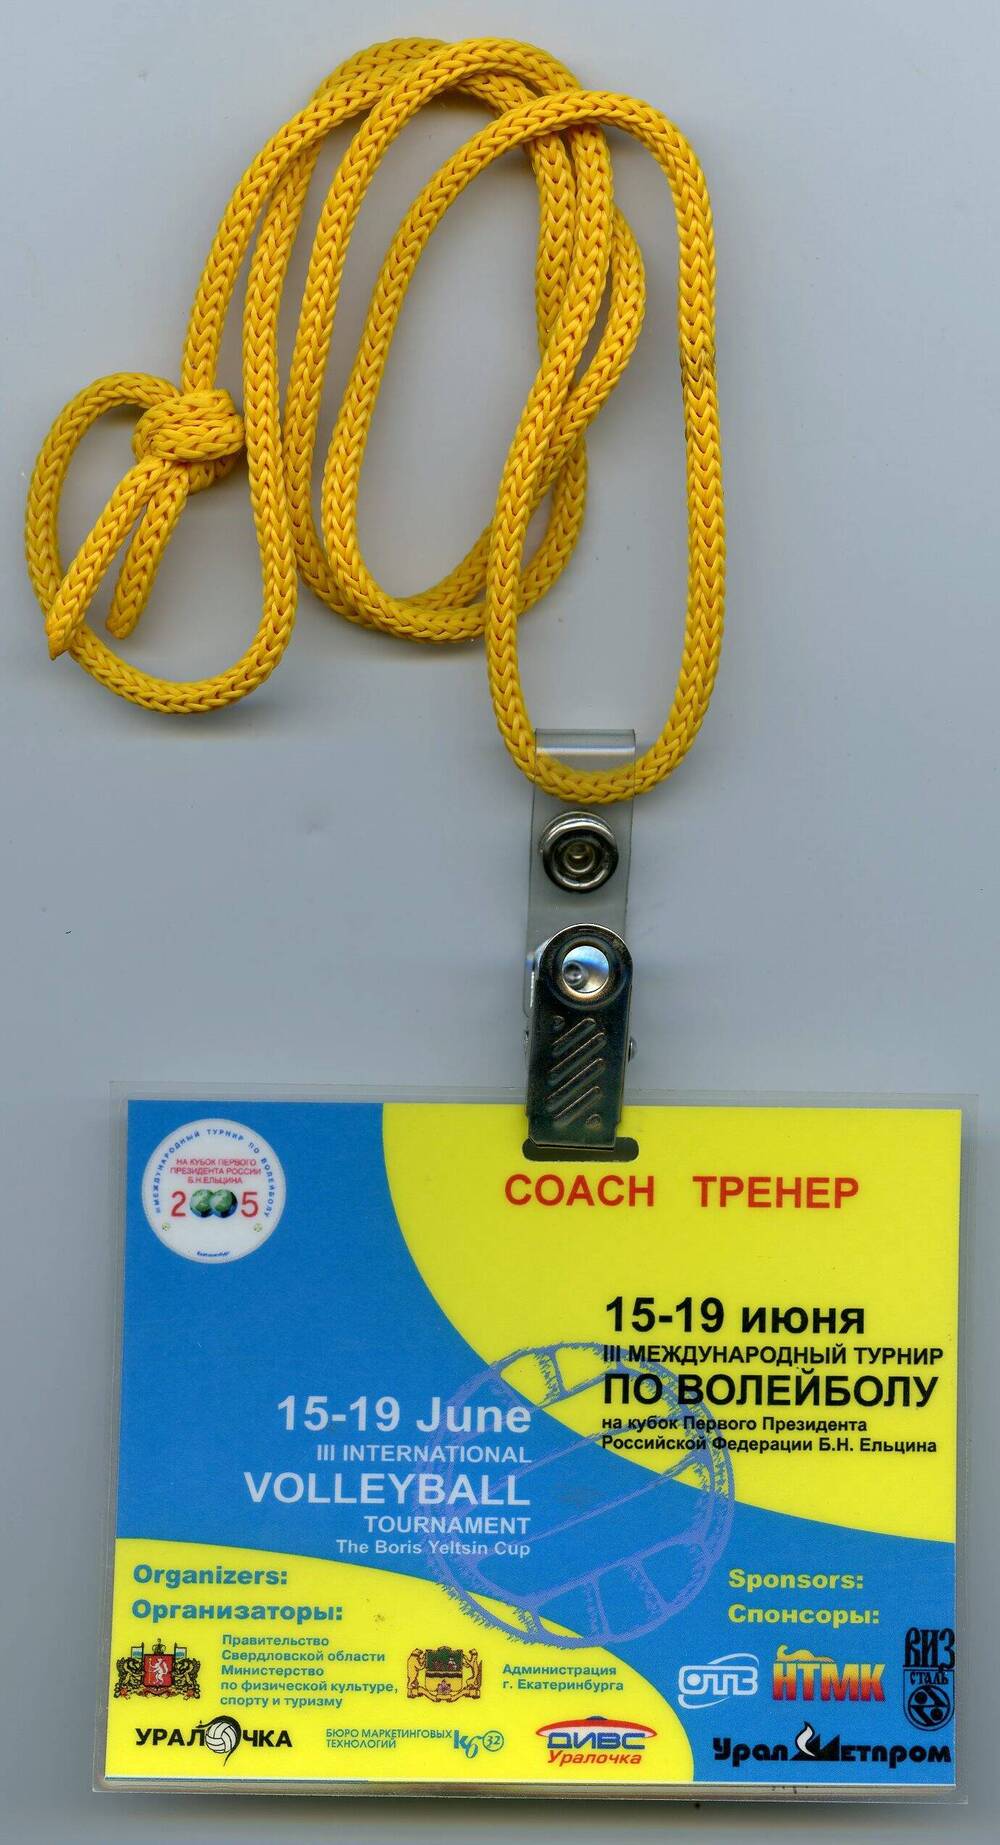 Бейдж тренера III Международного турнира по волейболу 15-19 июня 2005 года на кубок первого президента Российской Федерации Б.Н. Ельцина